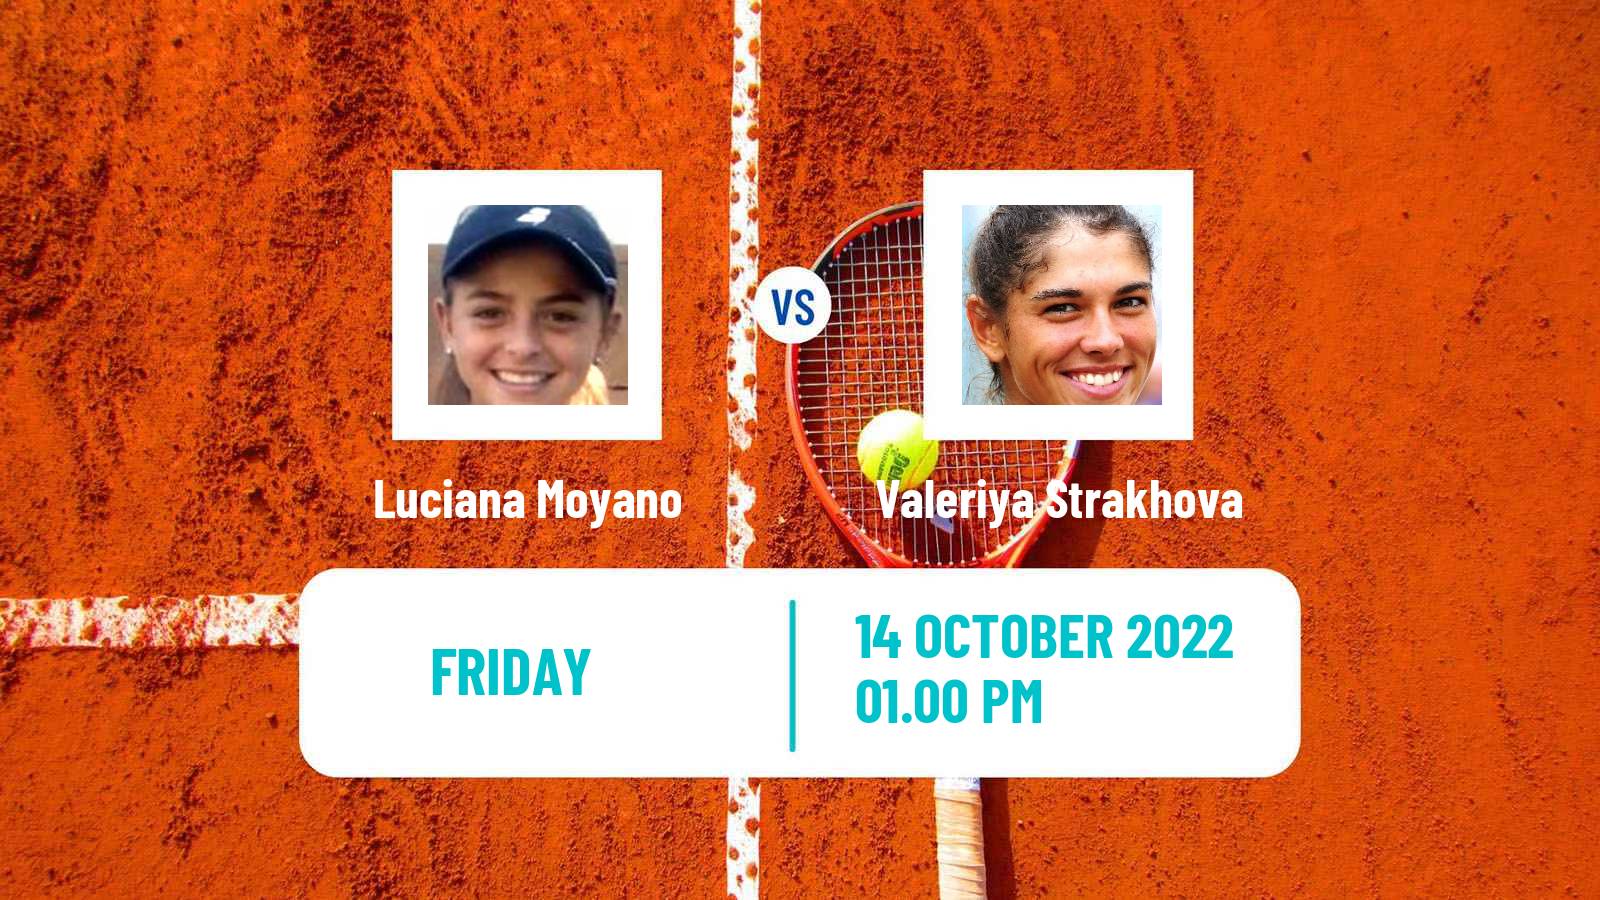 Tennis ITF Tournaments Luciana Moyano - Valeriya Strakhova